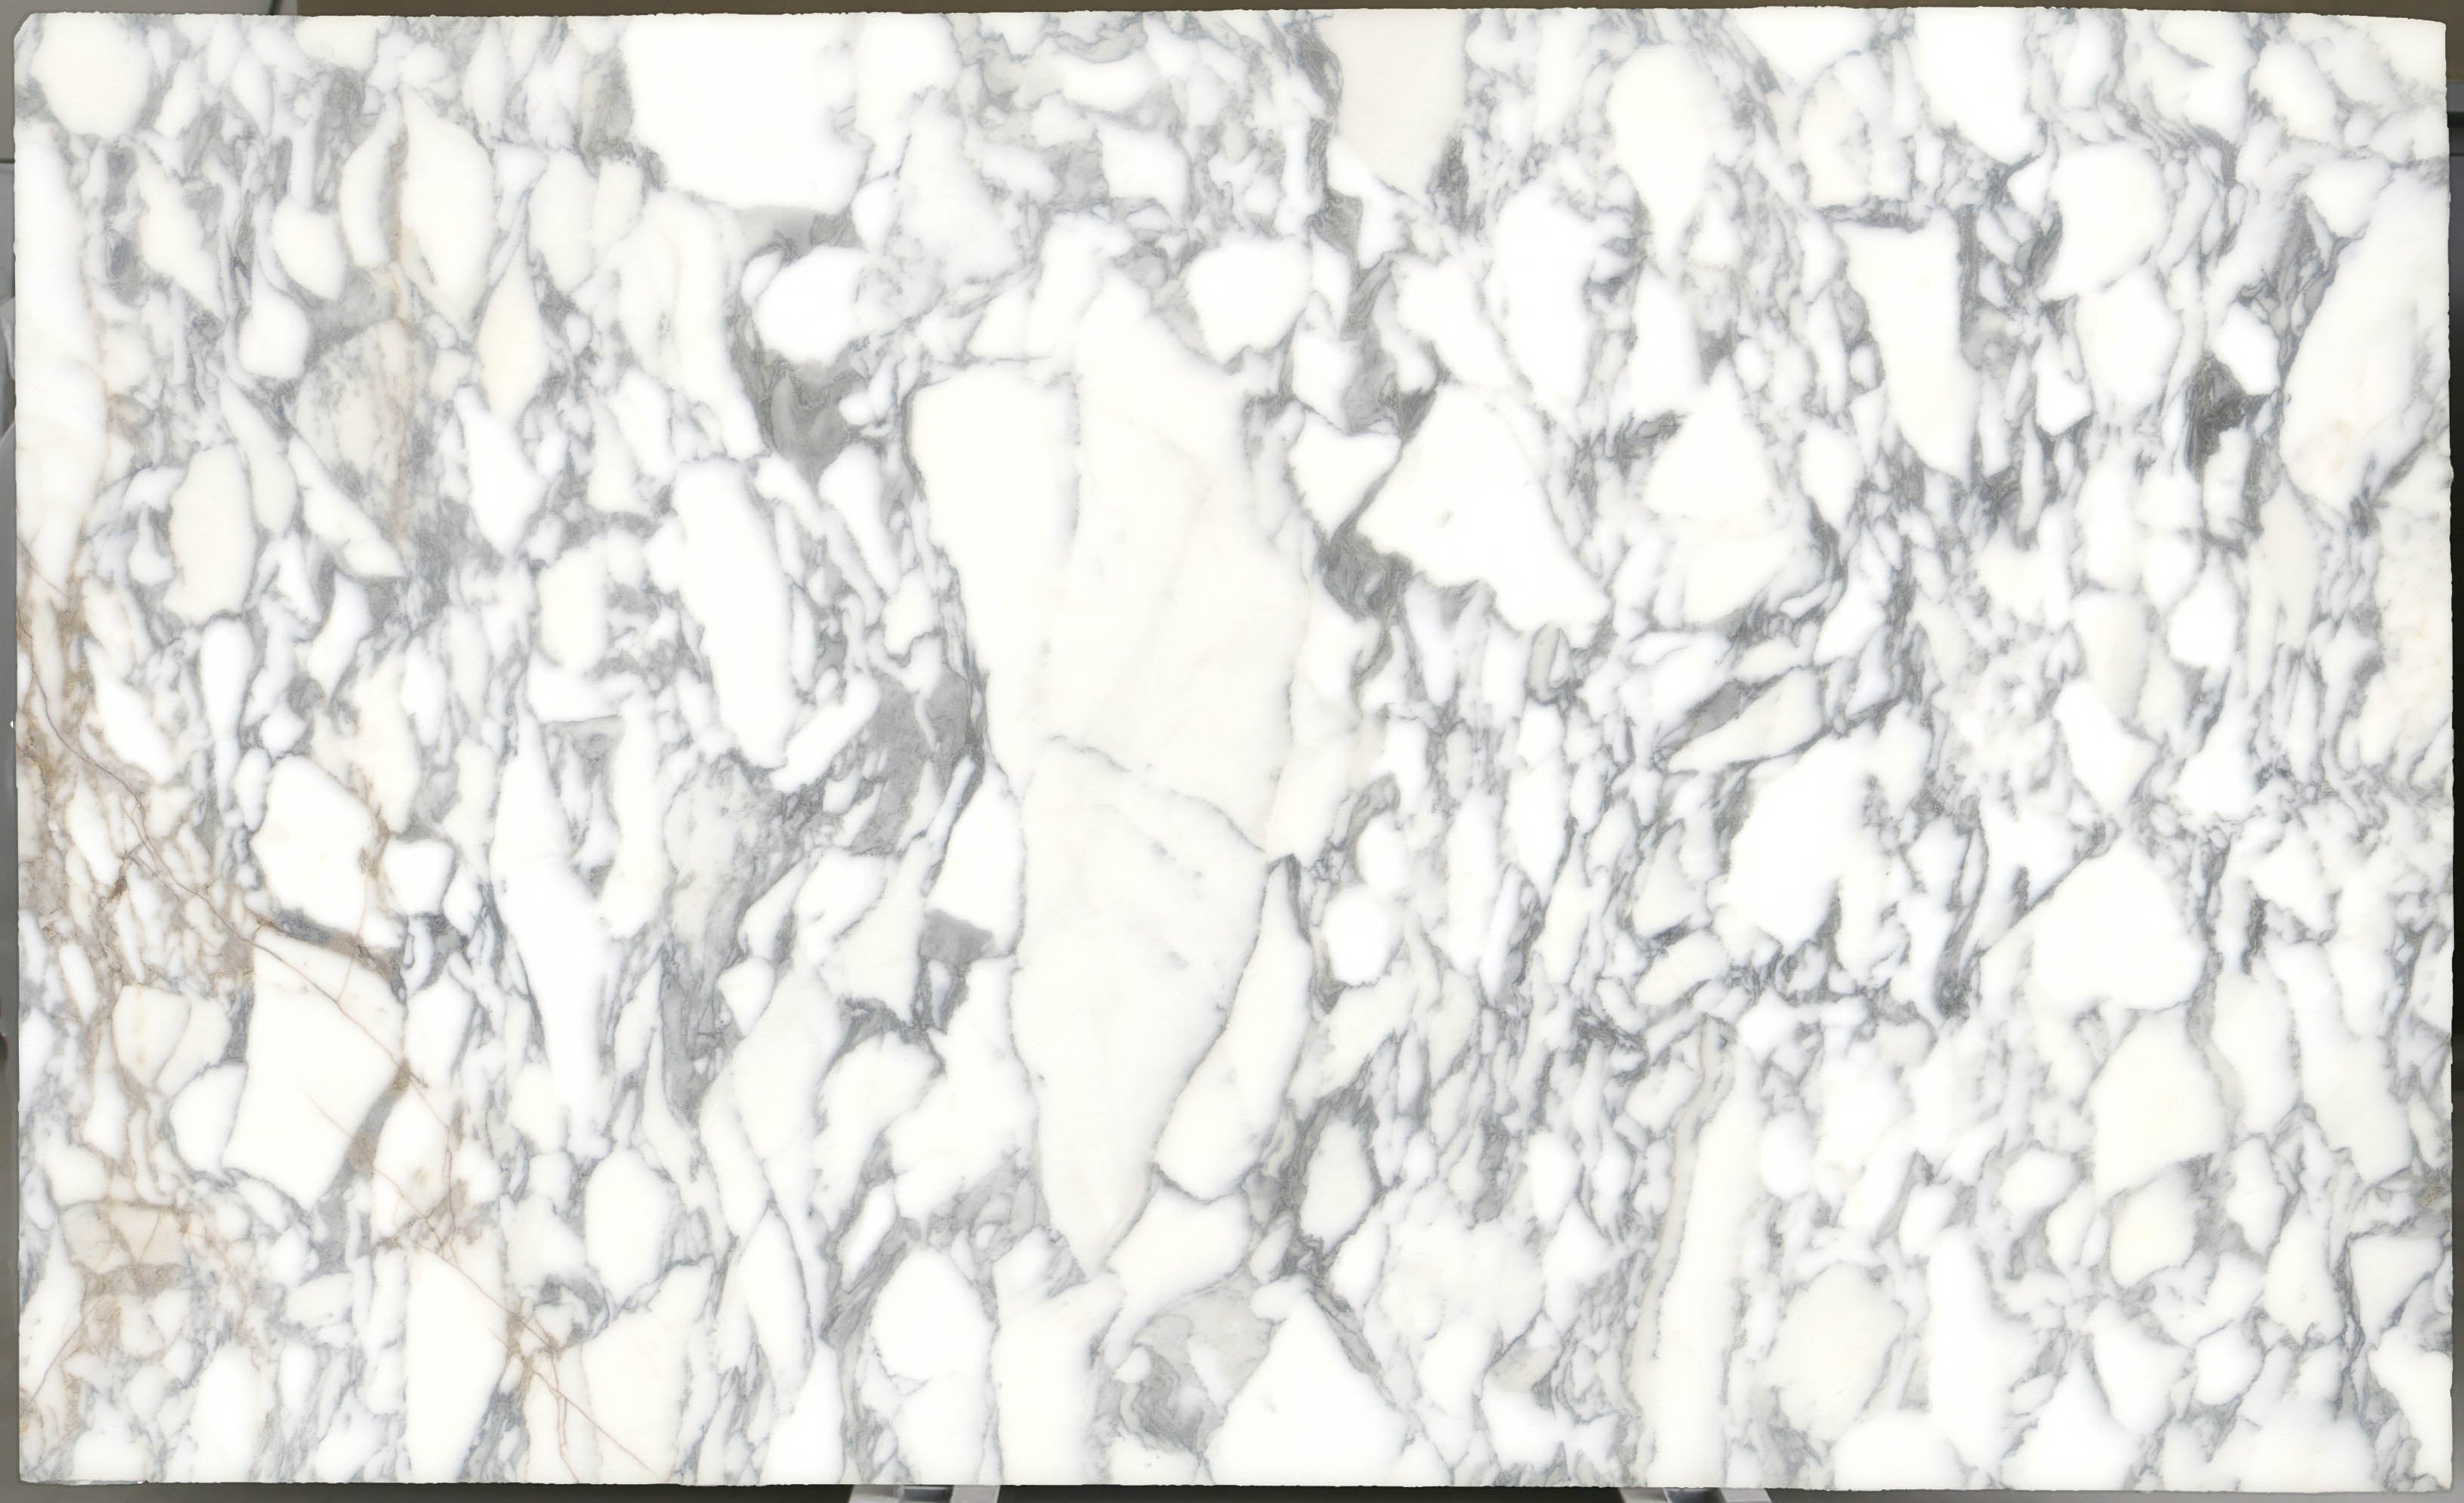  Arabescato Corchia Marble Slab 3/4 - 4026#20 -  VS 74x116 